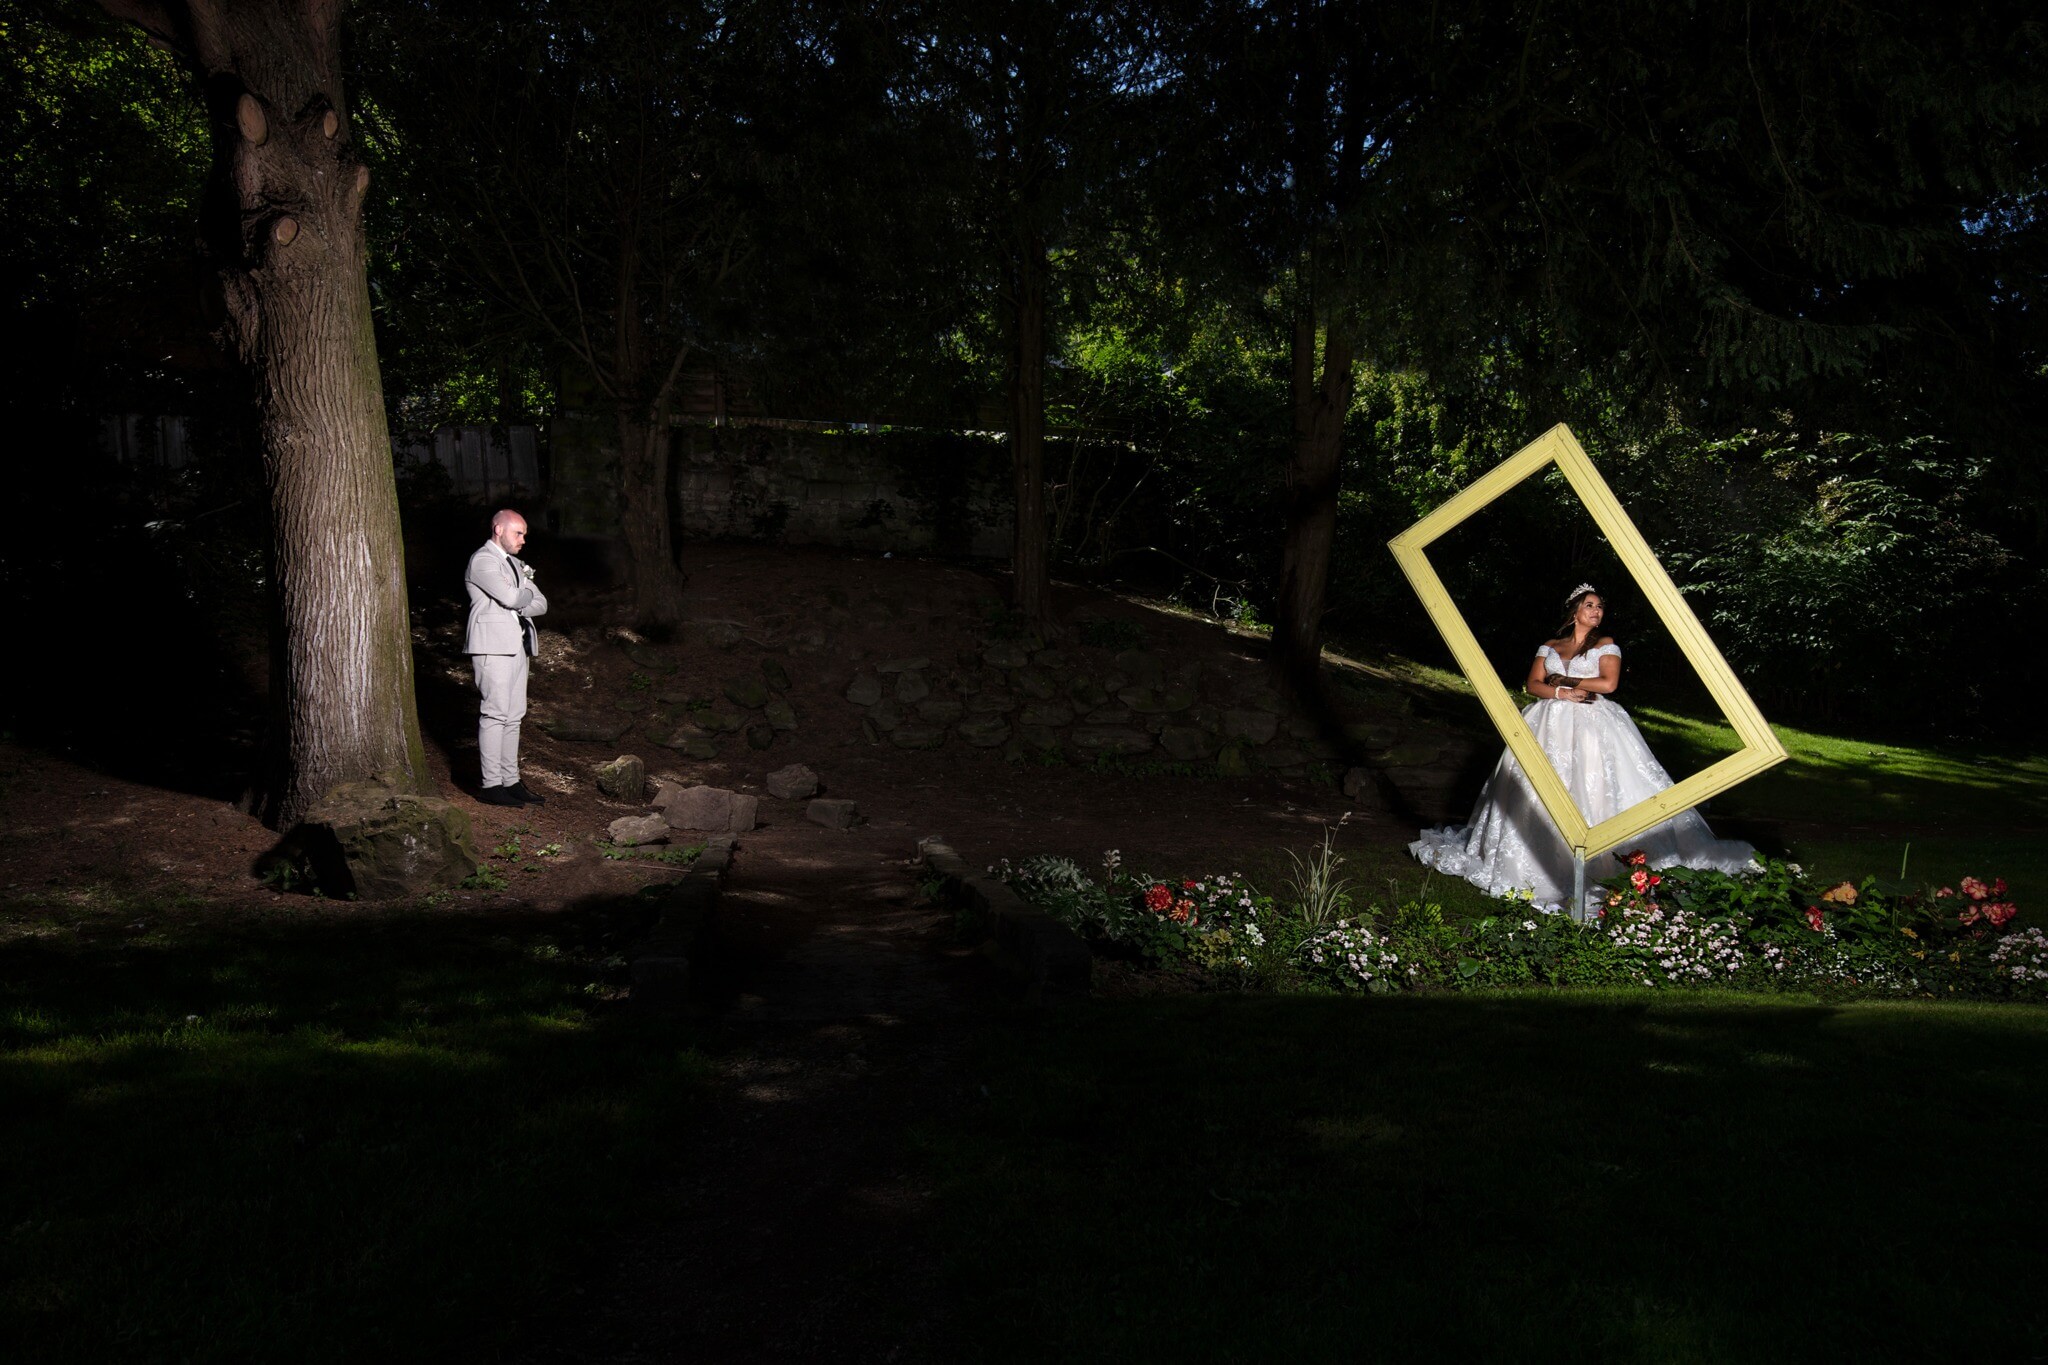 mariage photo humour mariés dans un parc Florent studio Boulogne le touquet paris lille